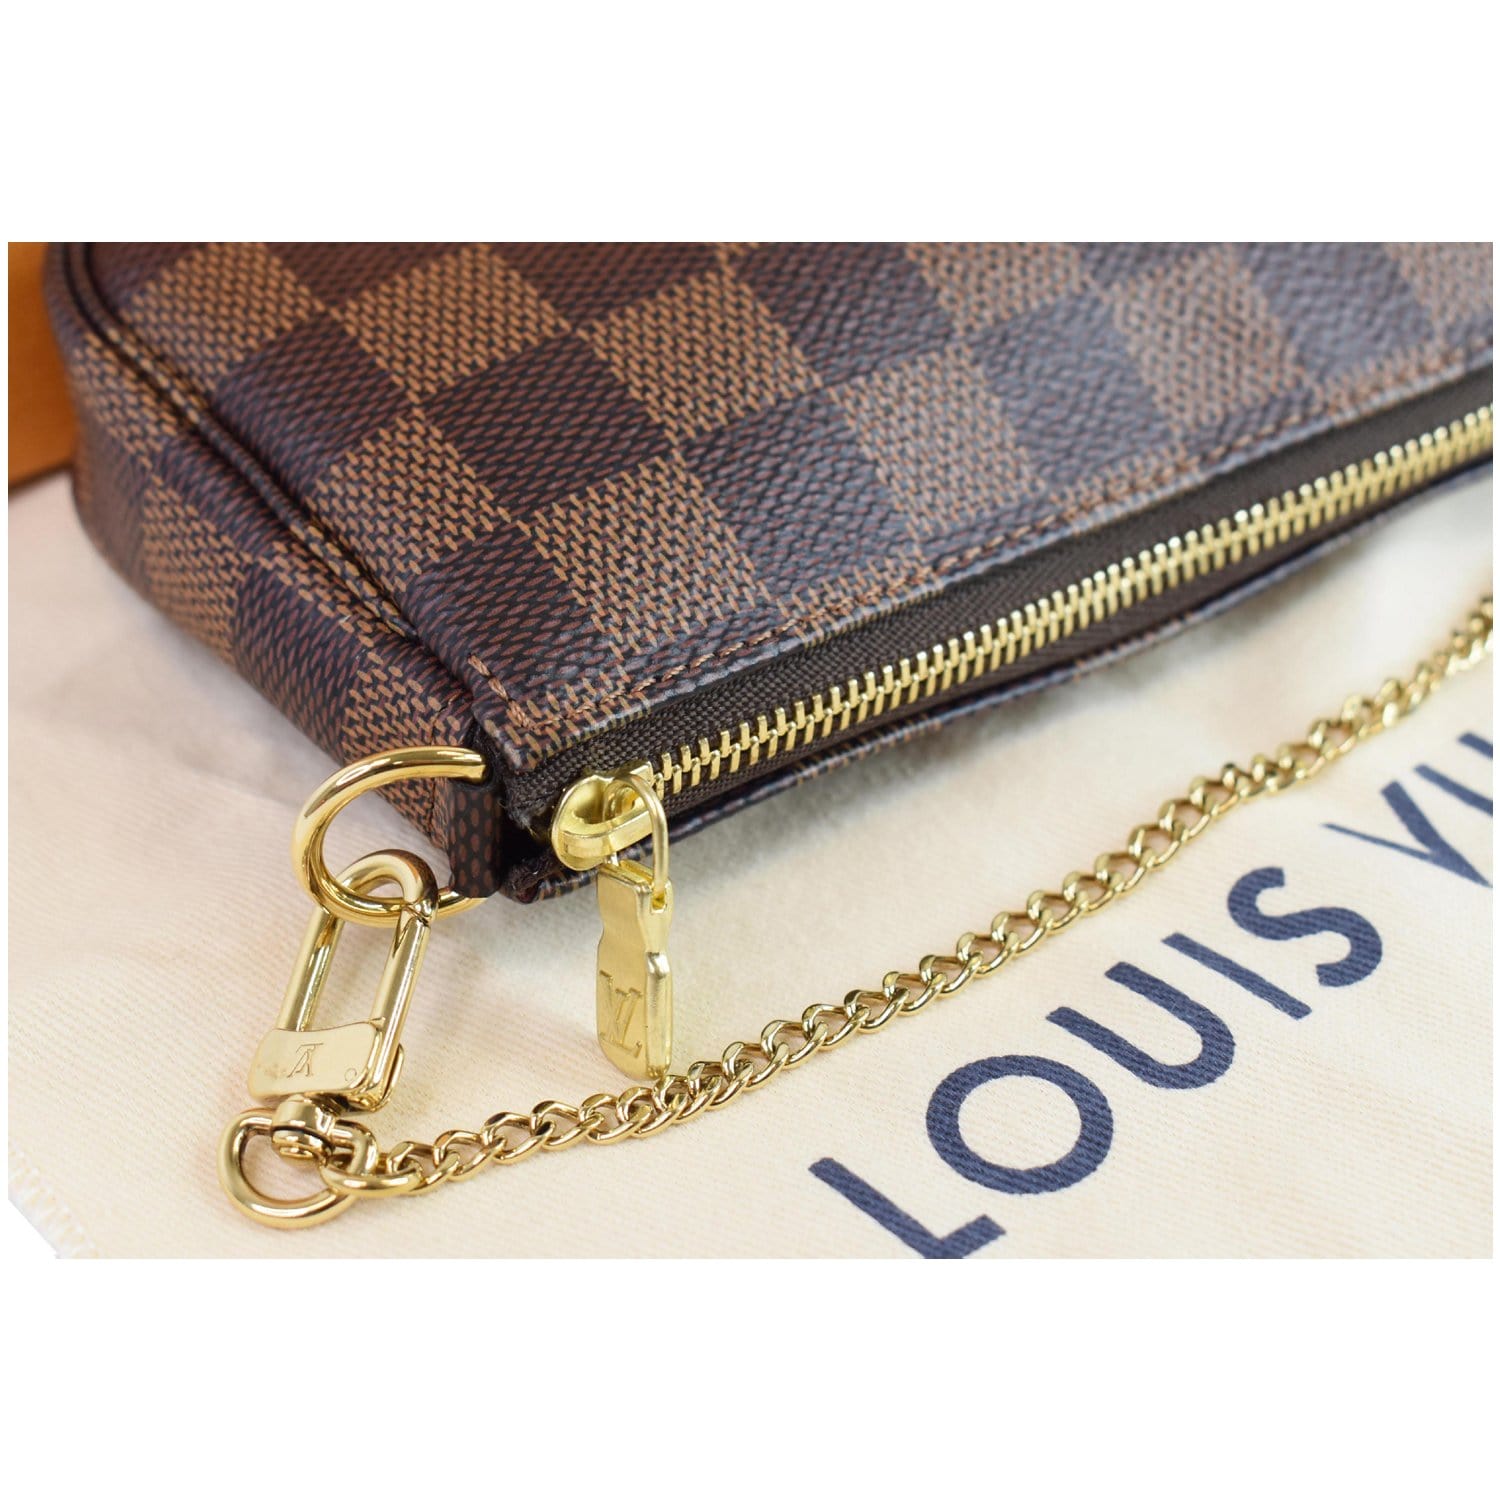 Louis Vuitton Damier Ebene Mini Pochette Accessories – Coco Approved Studio